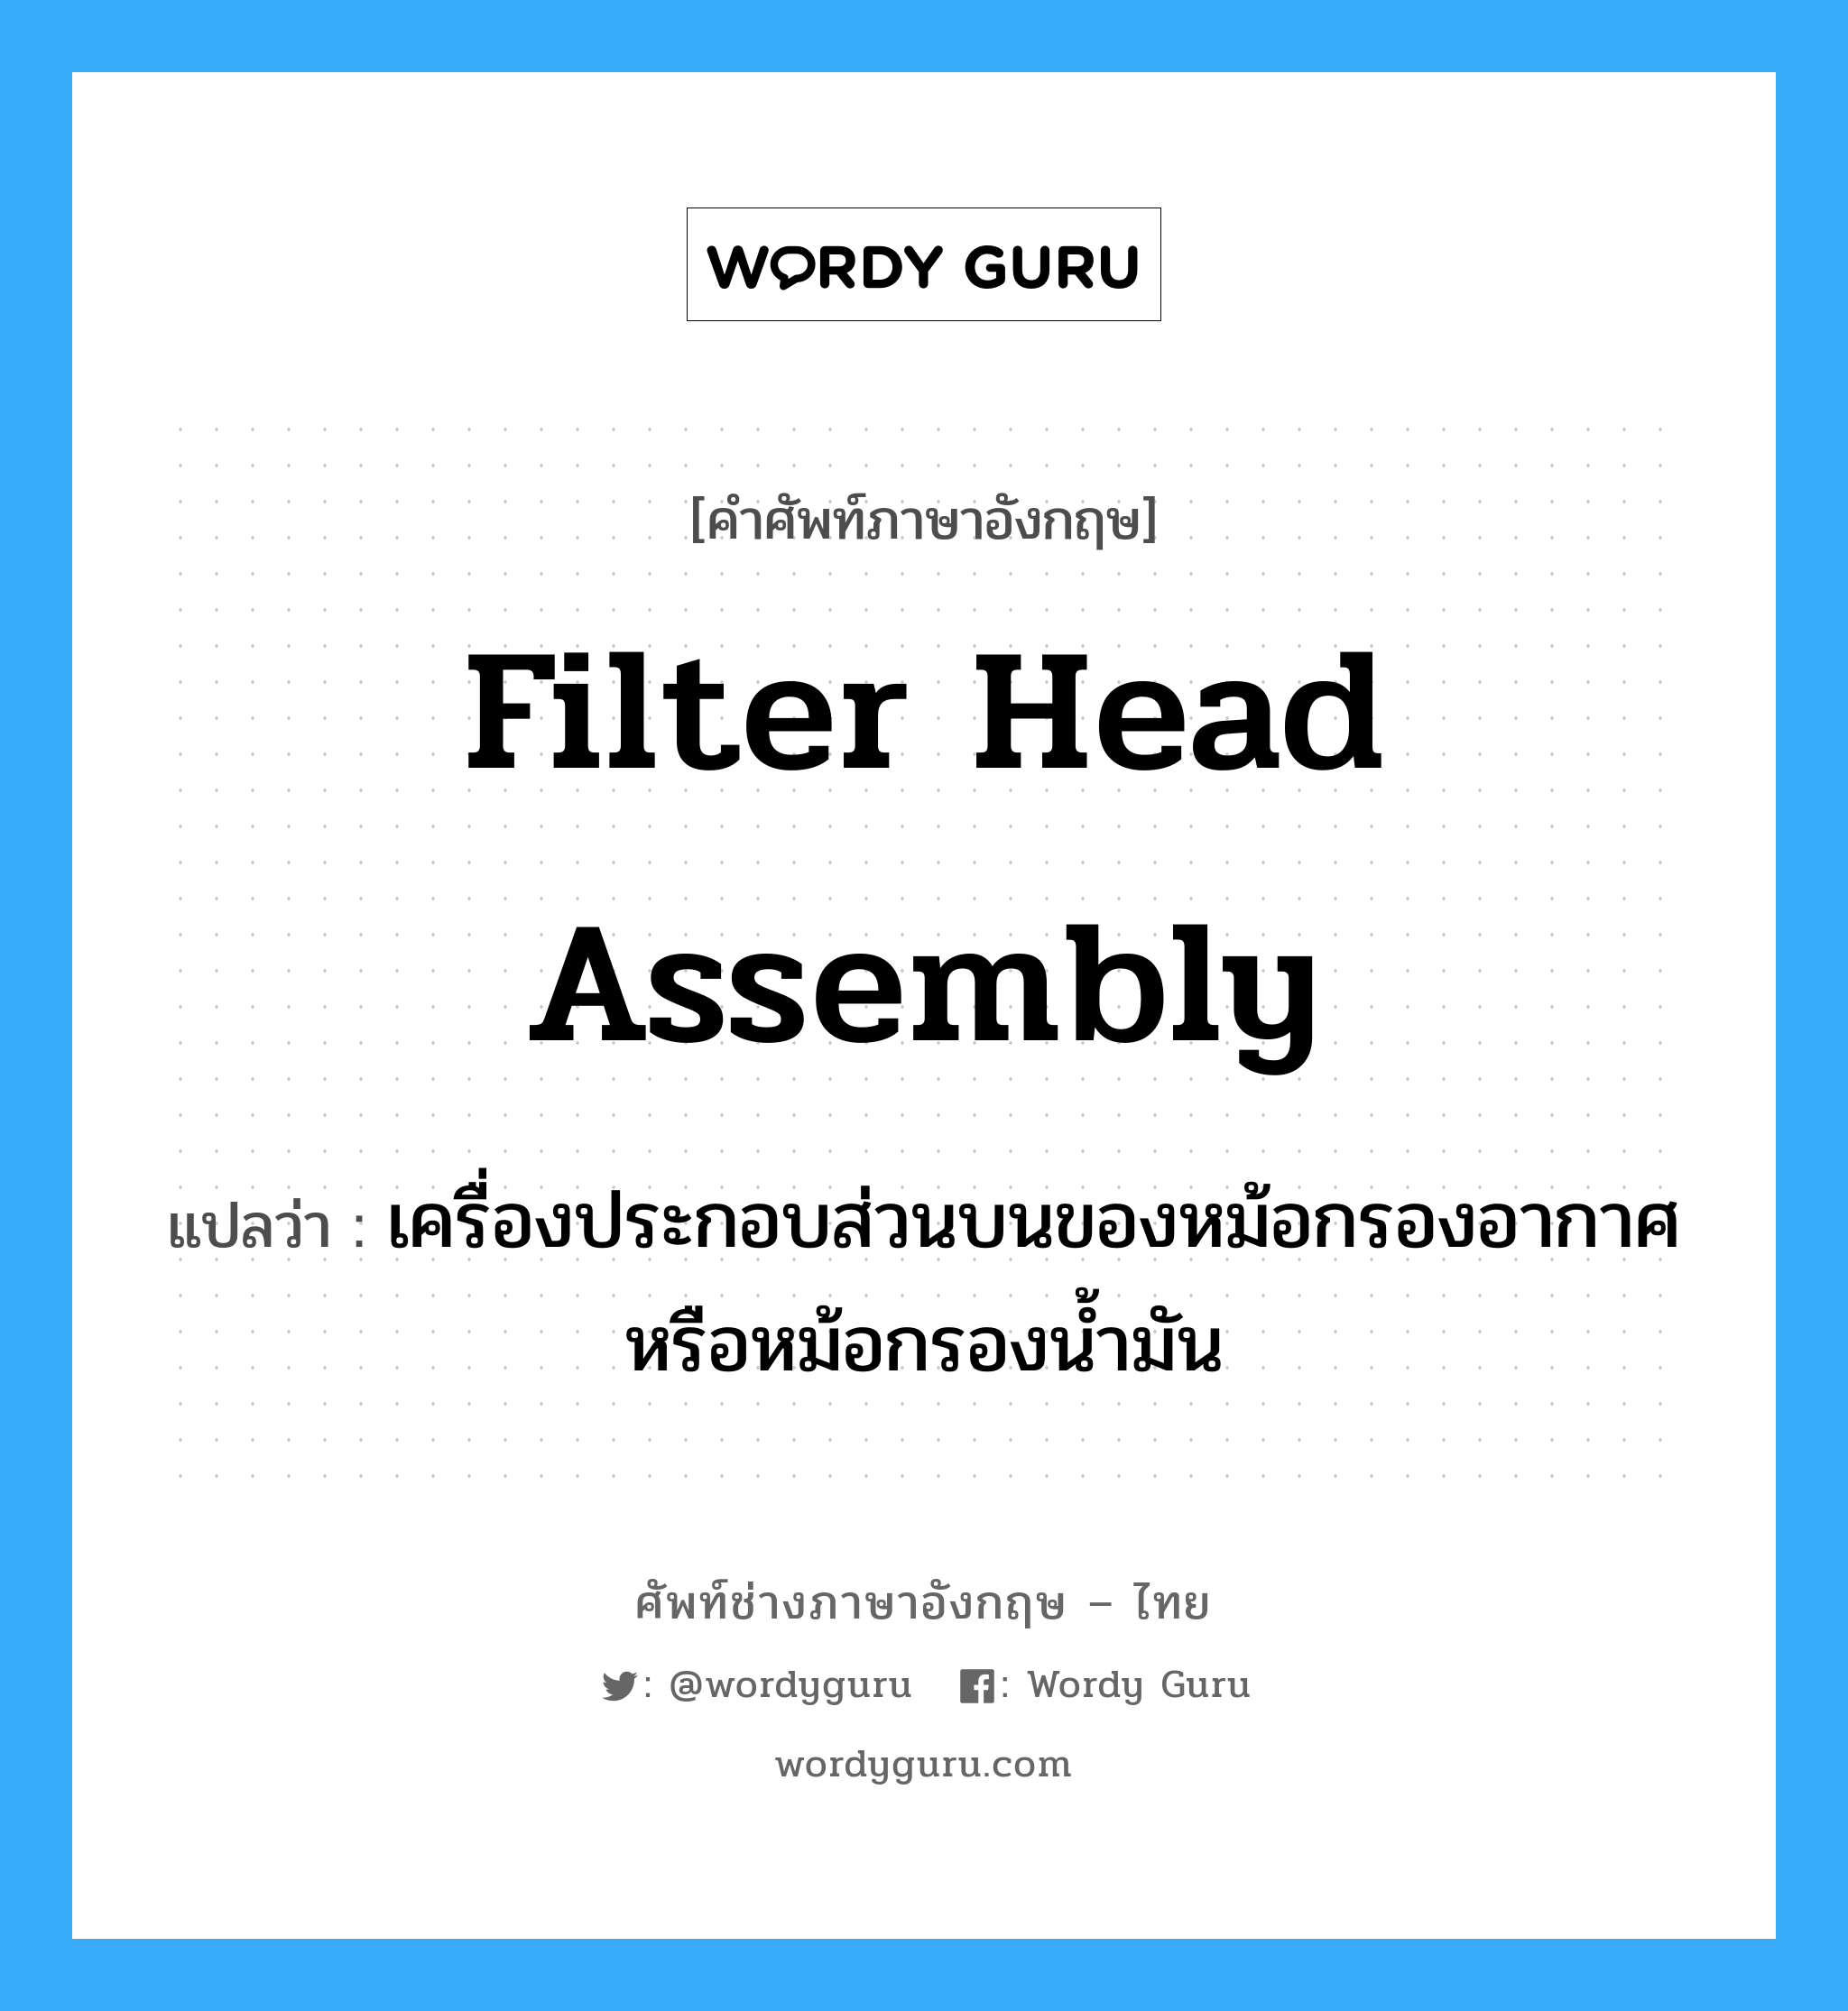 filter head assembly แปลว่า?, คำศัพท์ช่างภาษาอังกฤษ - ไทย filter head assembly คำศัพท์ภาษาอังกฤษ filter head assembly แปลว่า เครื่องประกอบส่วนบนของหม้อกรองอากาศ หรือหม้อกรองน้ำมัน